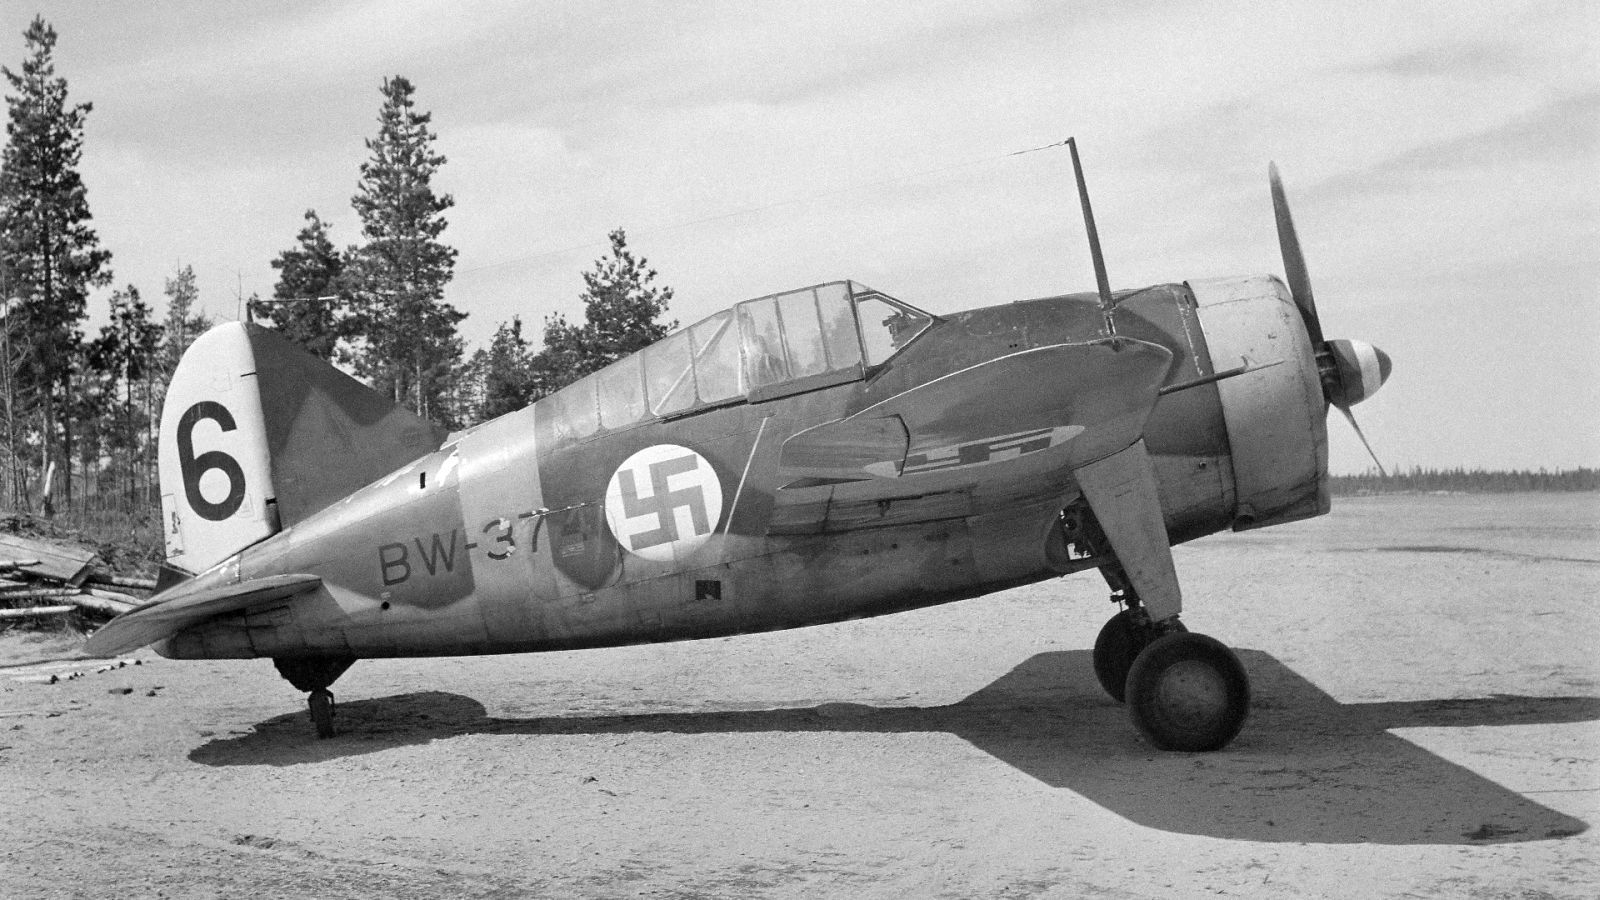 Brewster Buffalo, BW-374, 2/LeLv 24, Finnish AF, 1943